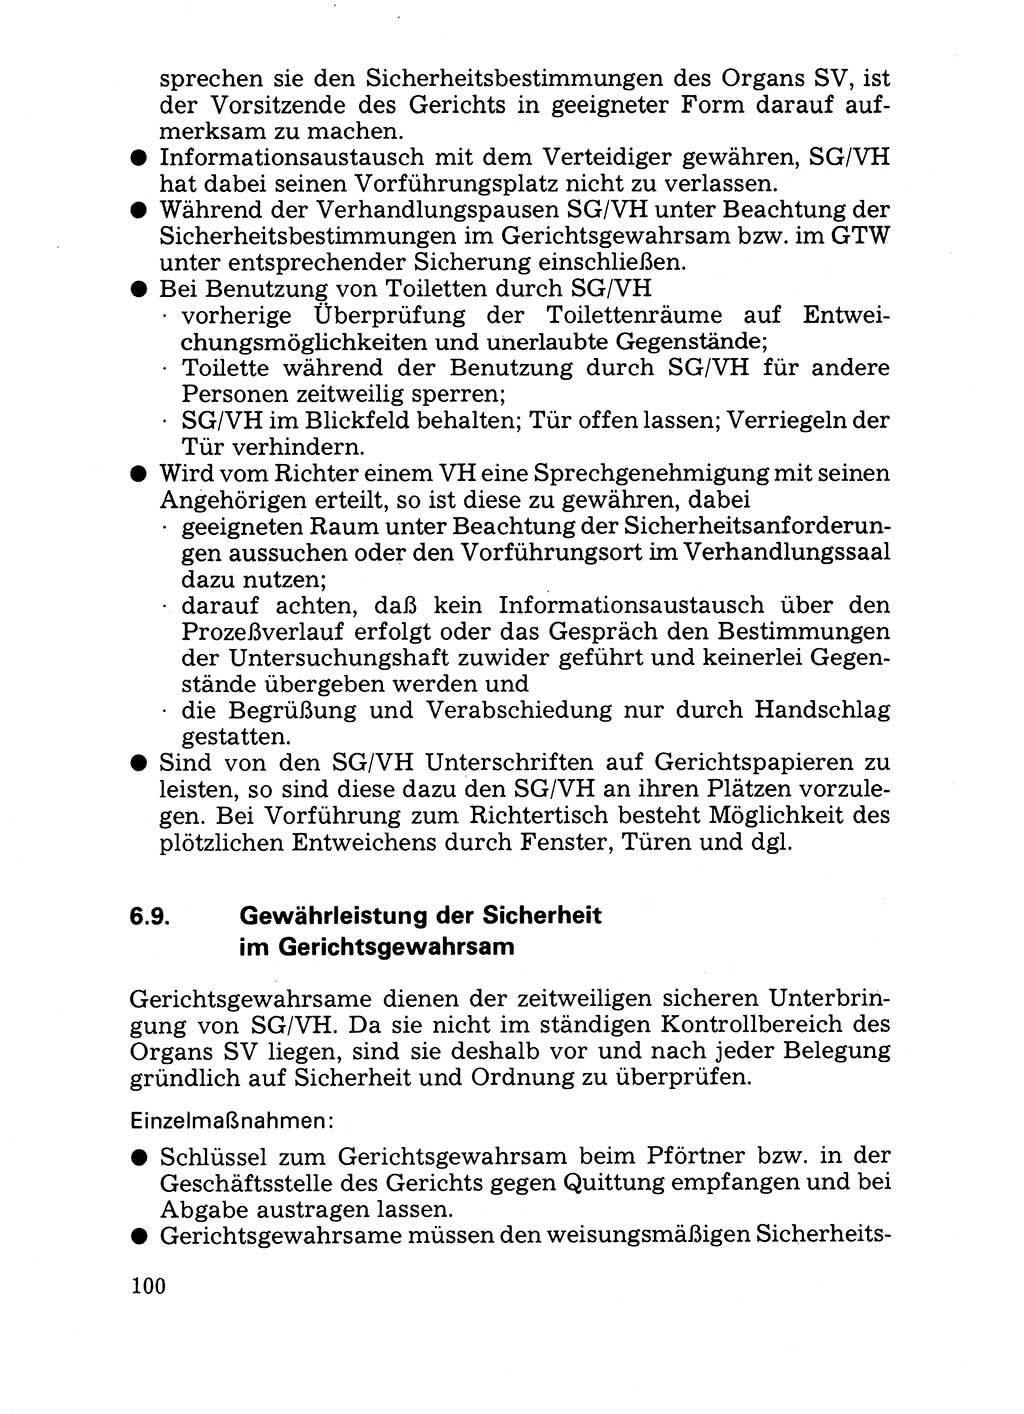 Handbuch für operative Dienste, Abteilung Strafvollzug (SV) [Ministerium des Innern (MdI) Deutsche Demokratische Republik (DDR)] 1981, Seite 100 (Hb. op. D. Abt. SV MdI DDR 1981, S. 100)